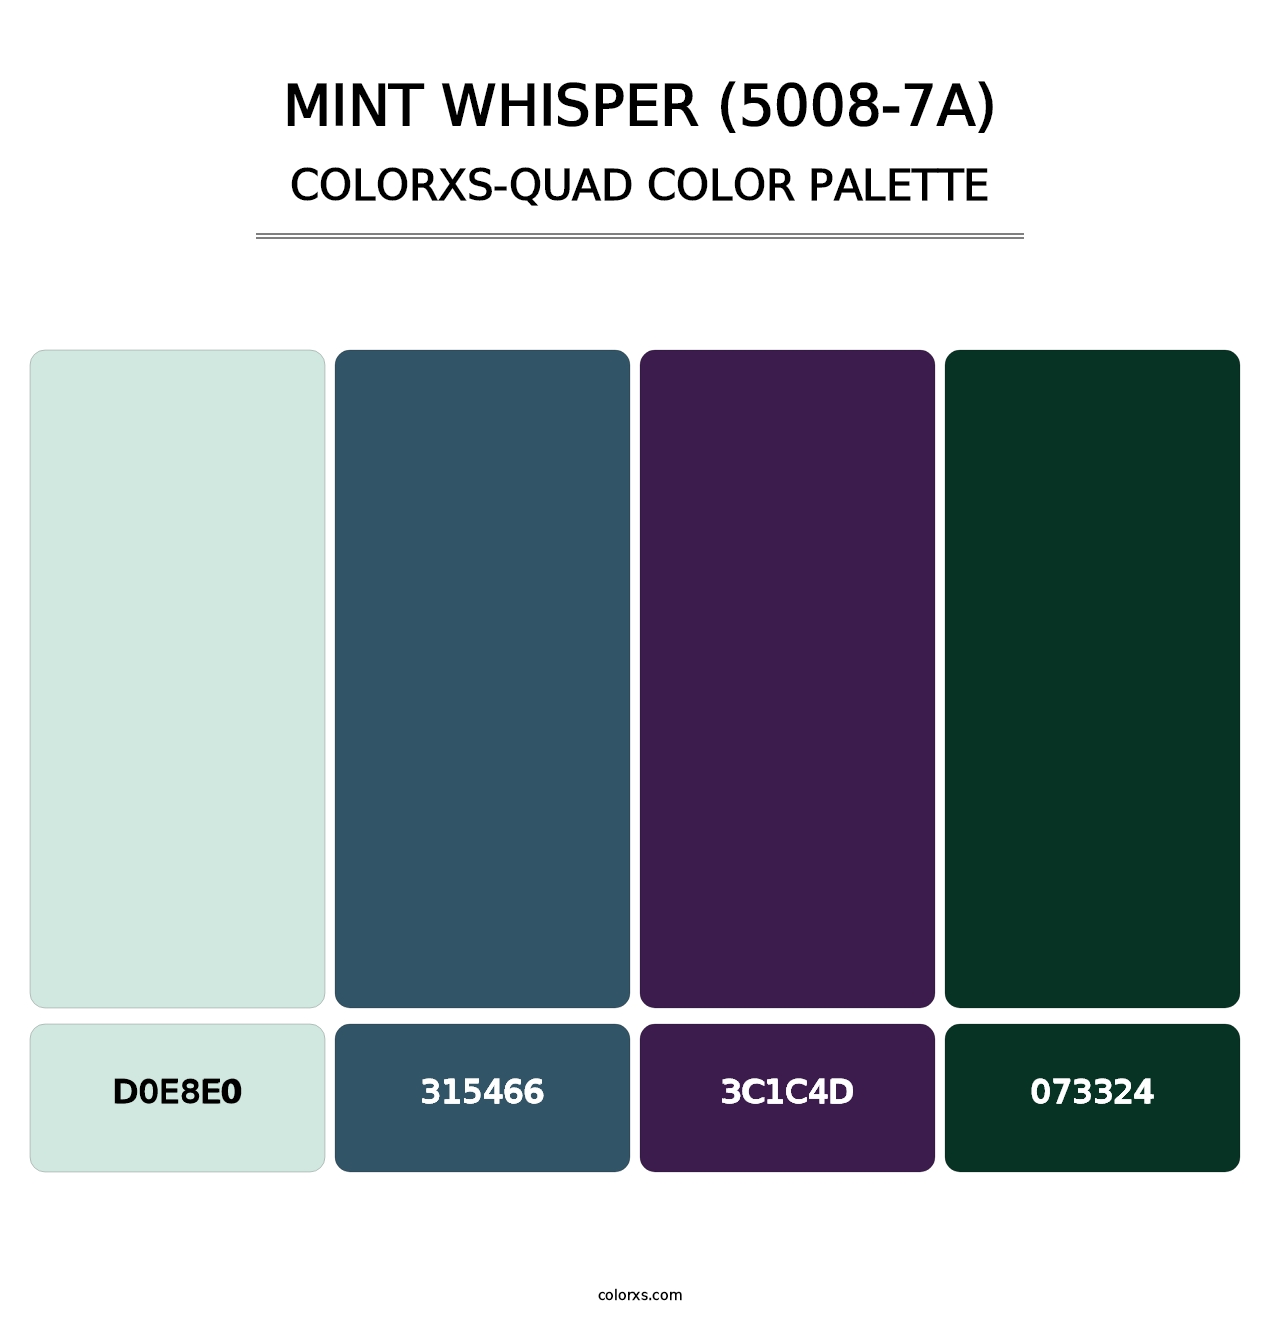 Mint Whisper (5008-7A) - Colorxs Quad Palette